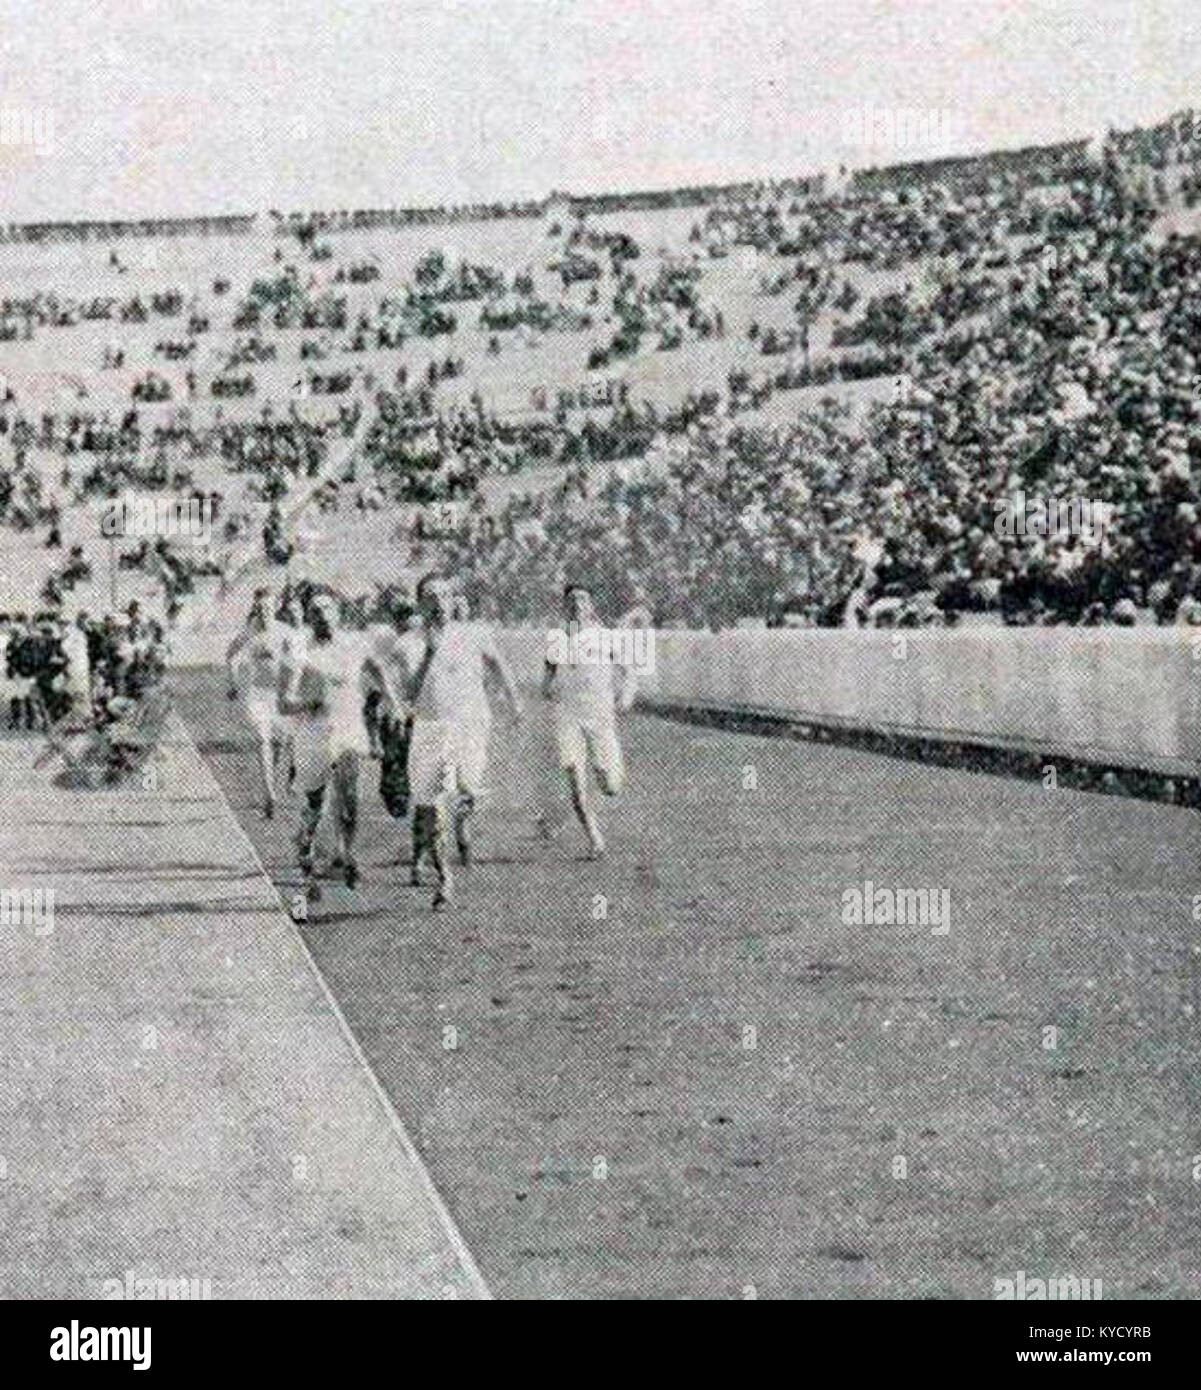 Paolo Pellegrino, vainqueur des 400 et 800 mètres à Athènes en 1906 Foto Stock